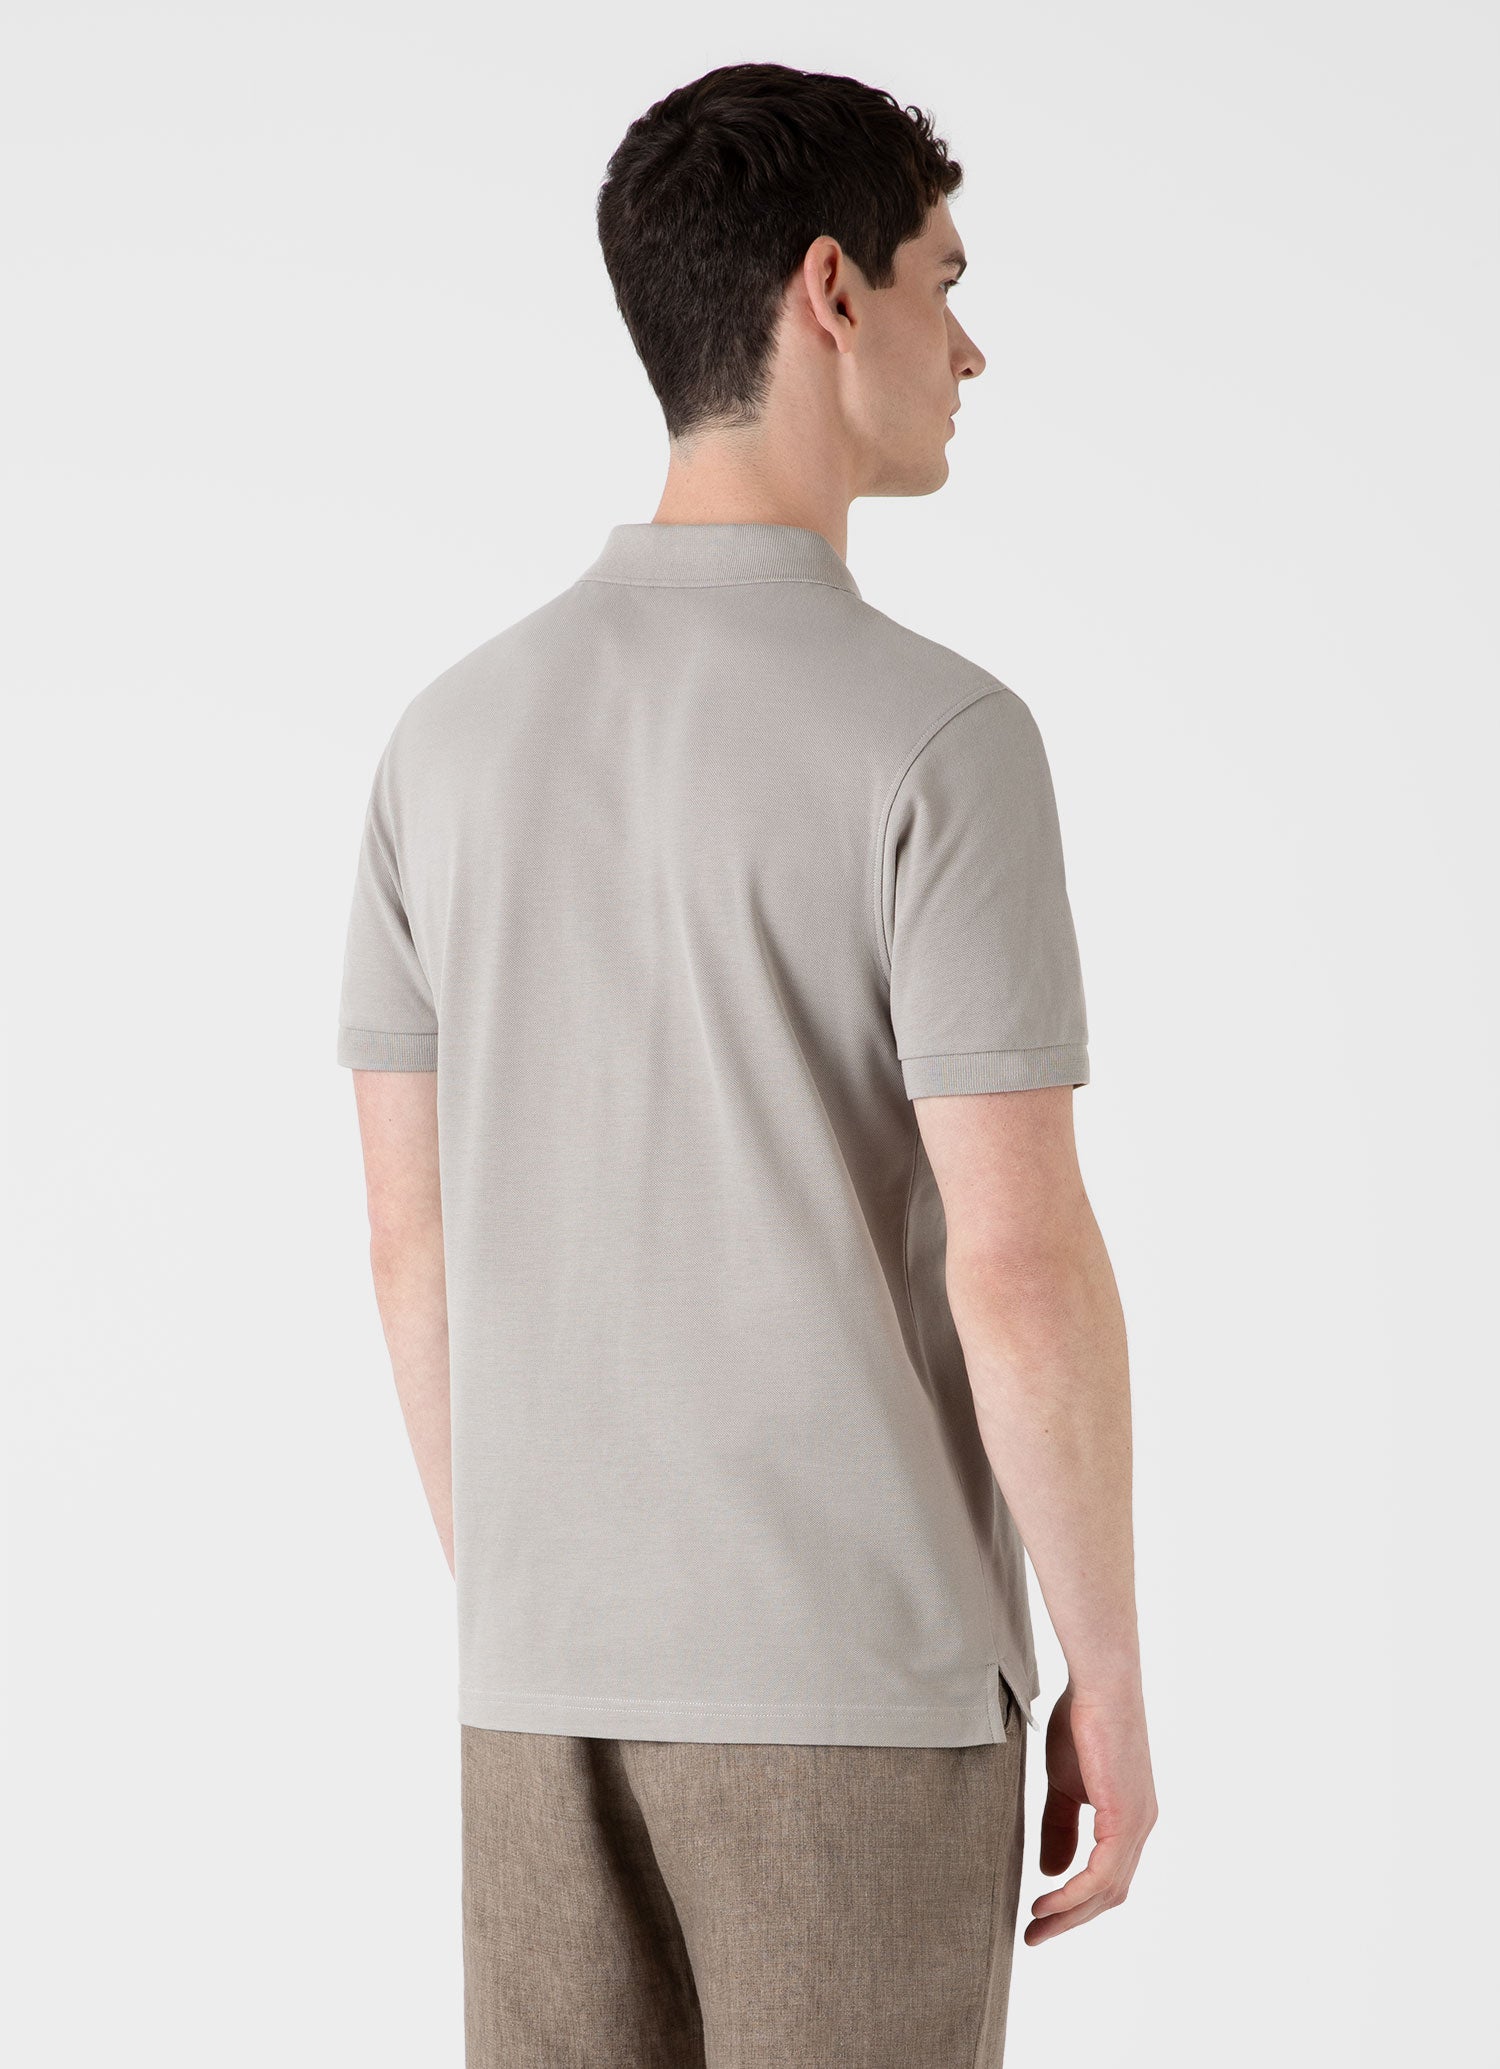 Men's Piqué Polo Shirt in Mid Grey